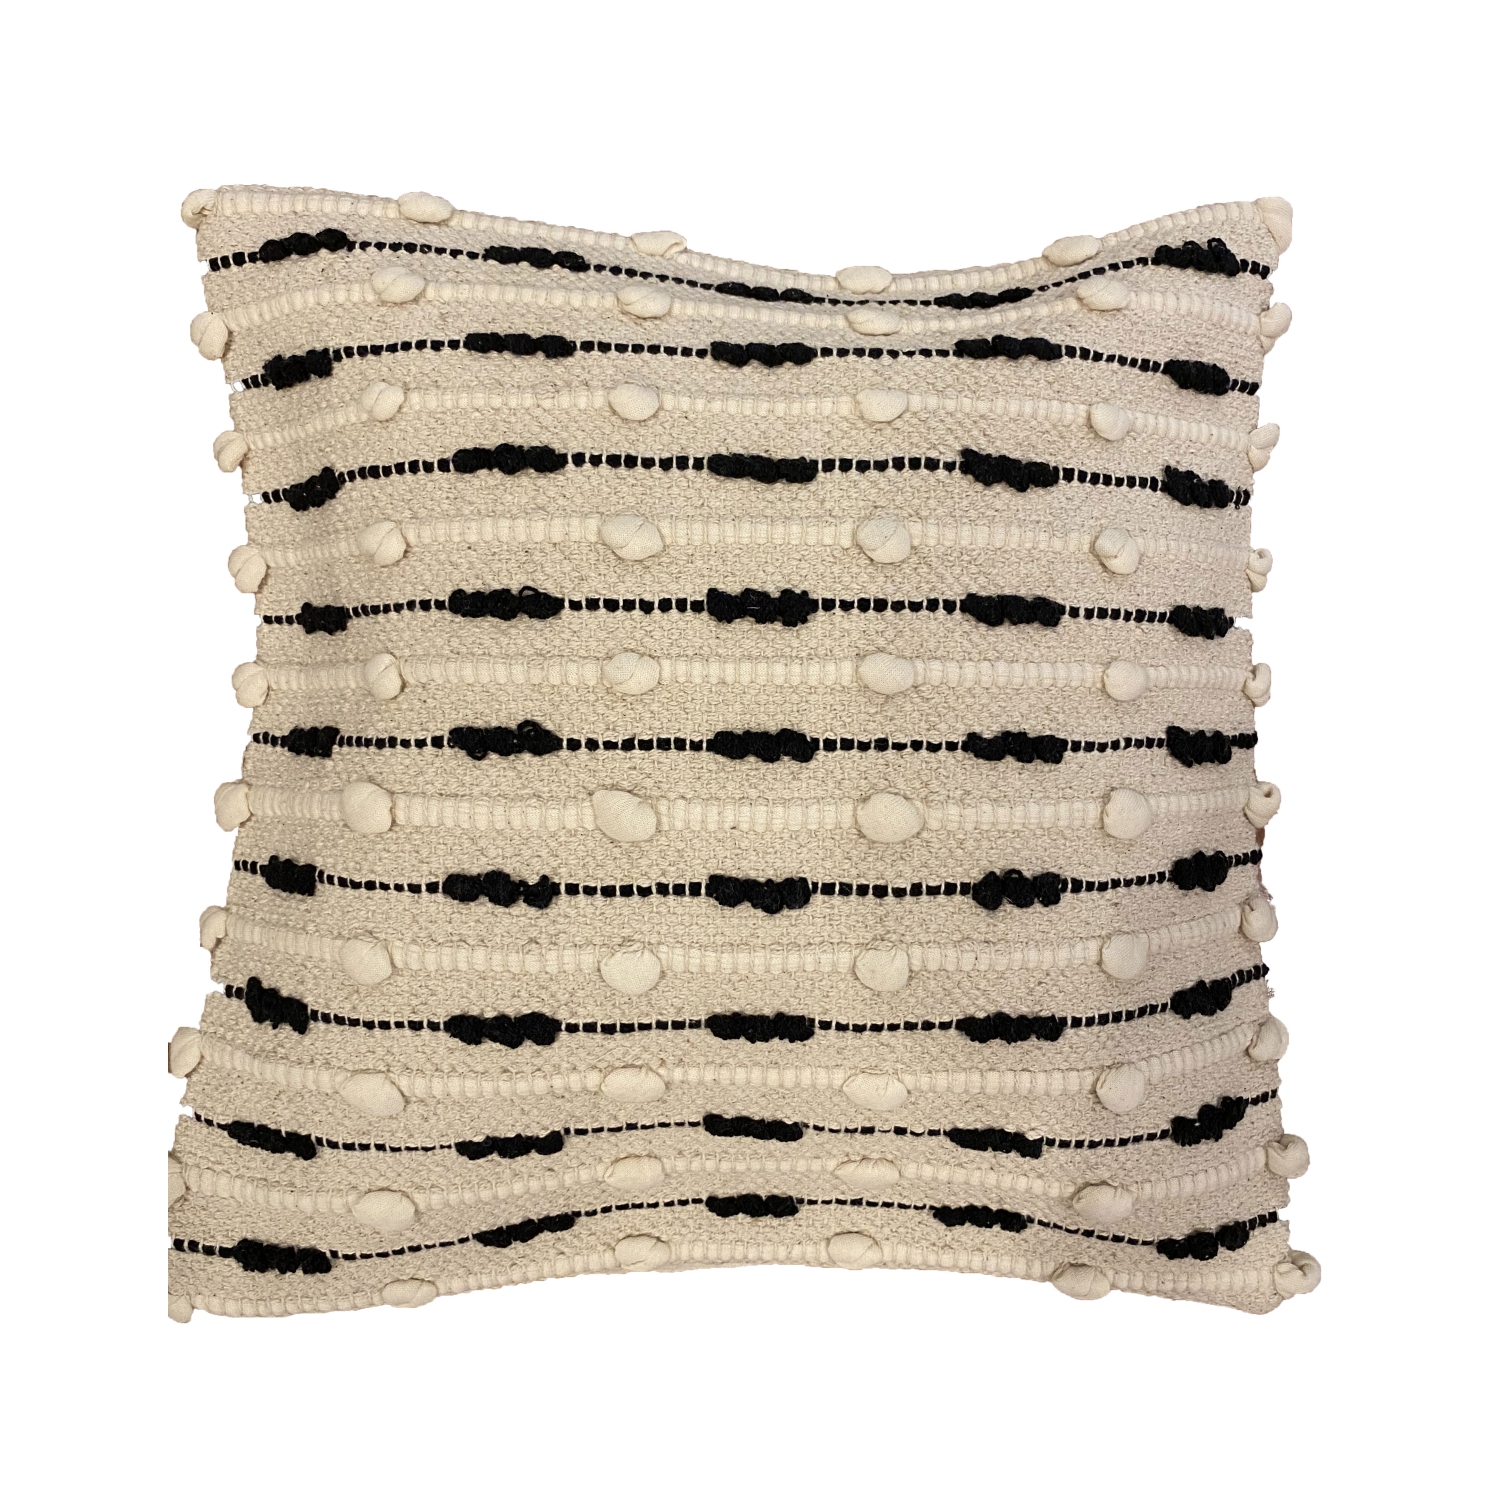 Spura Home Comfortable Caterpillar Design Moroccan Style Pillows 18x18